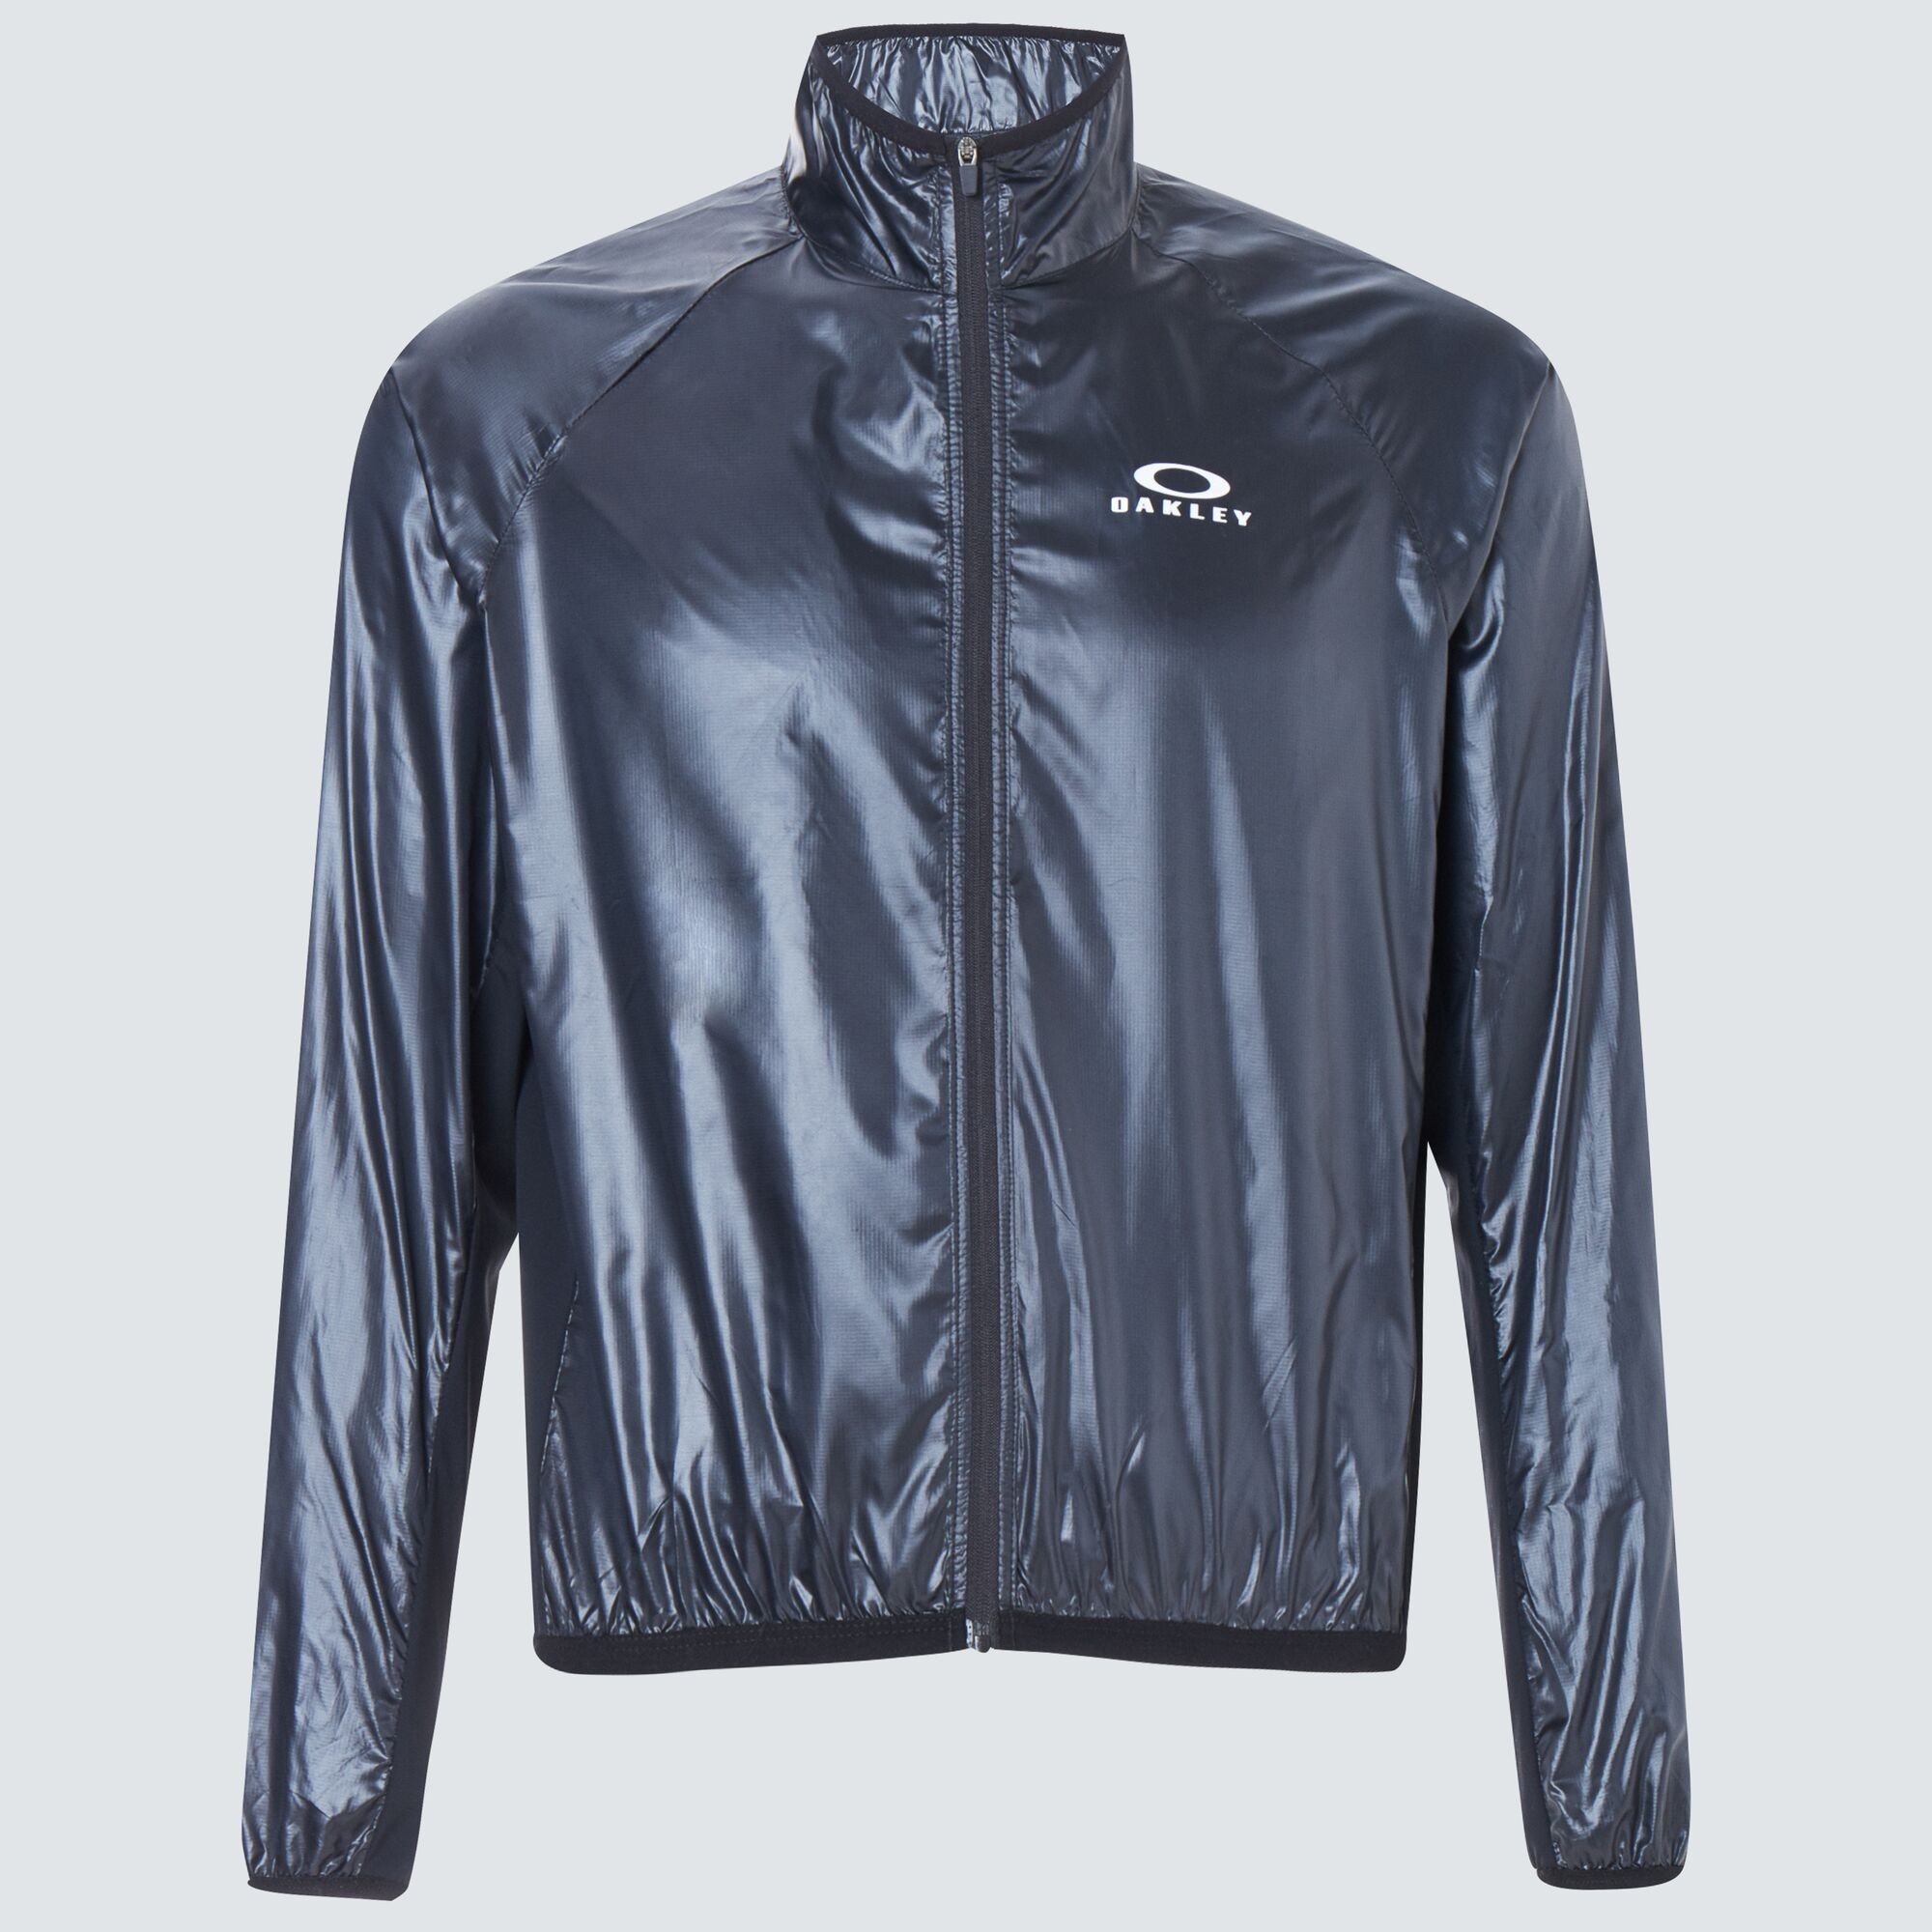 Oakley Enhance Synchronism Jacket  - Uniform Gray